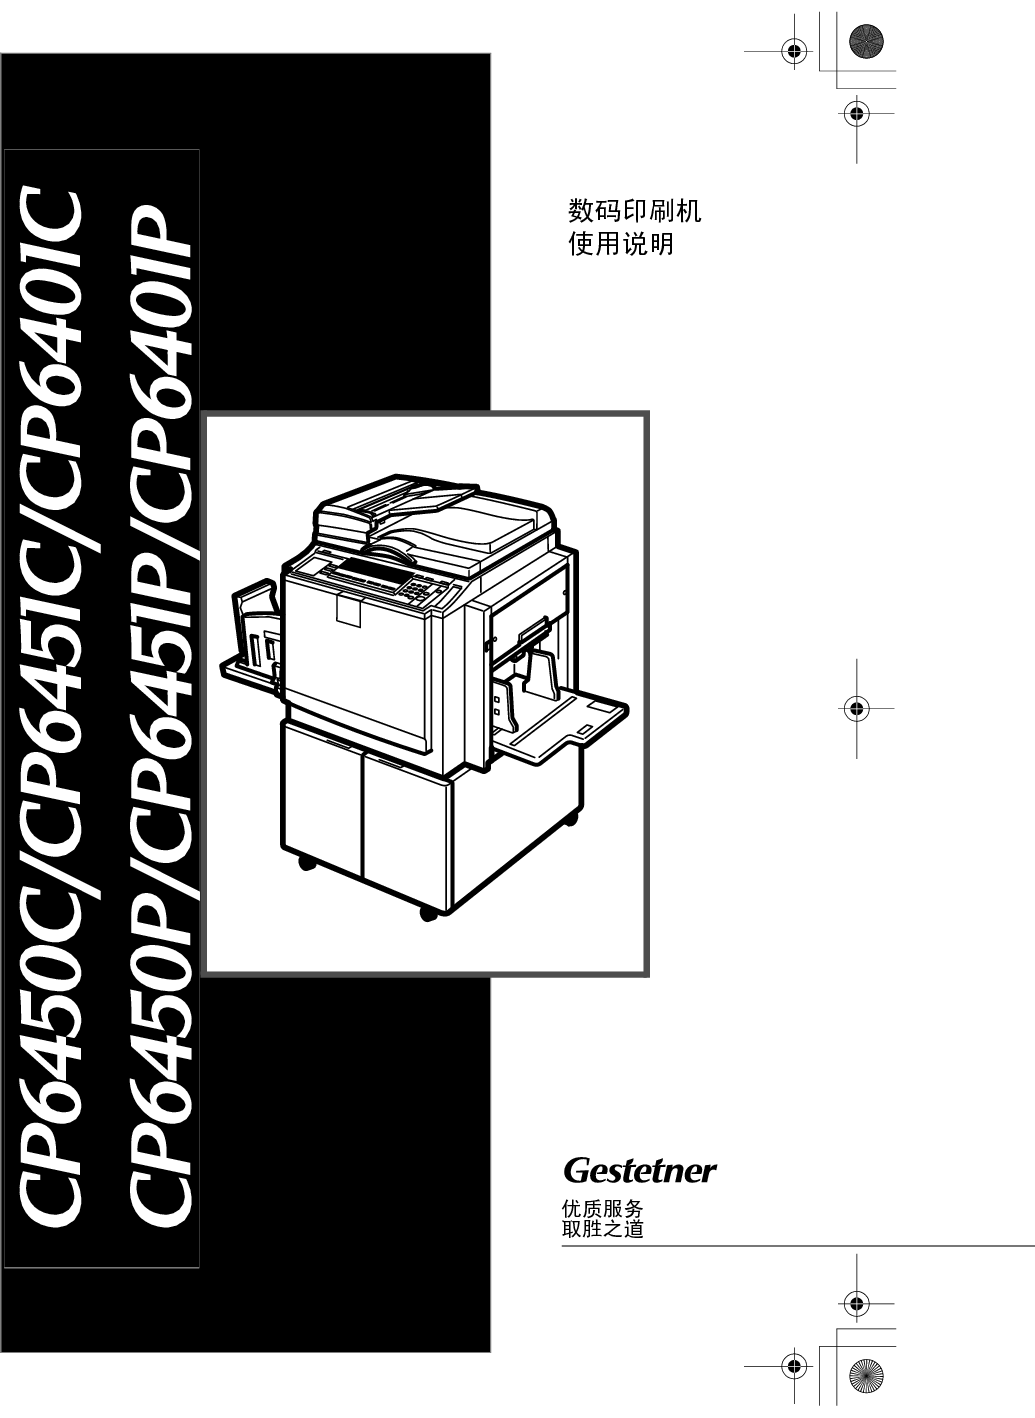 基士得耶 Gestetner CP6401C 使用说明书 封面